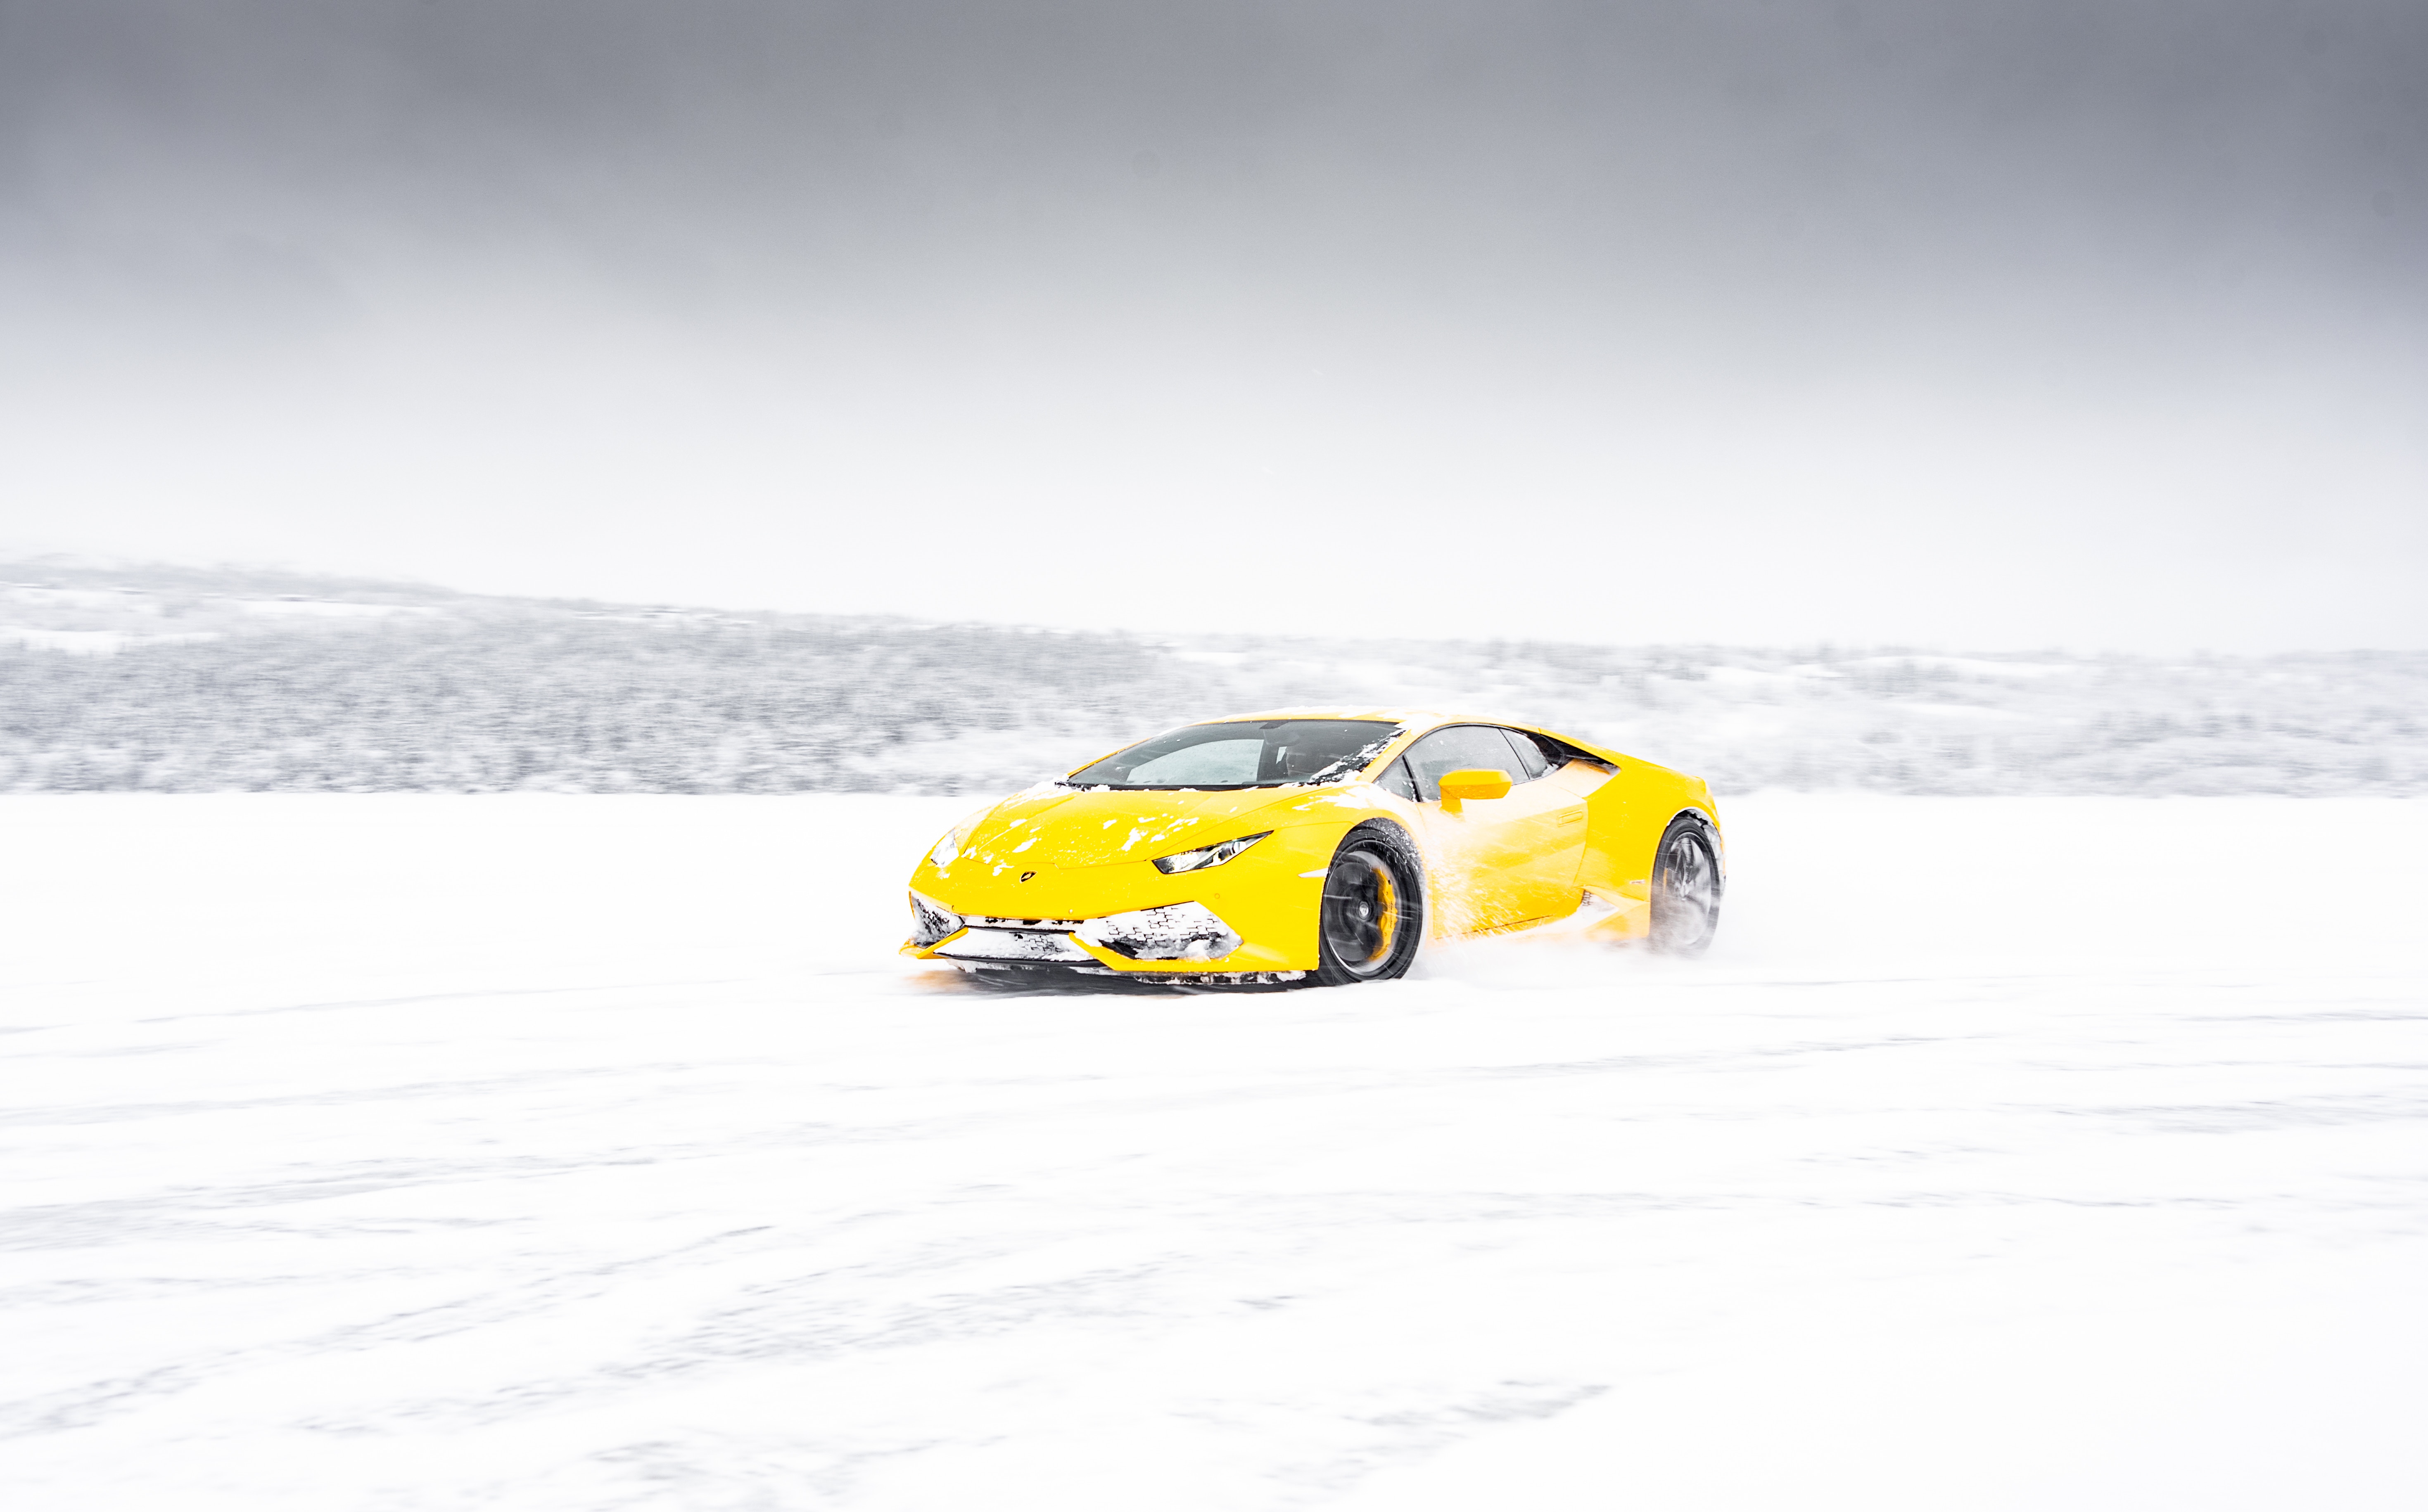 lamborghini, sports, winter, snow, cars, yellow, sports car, supercar, lamborghini aventador Full HD